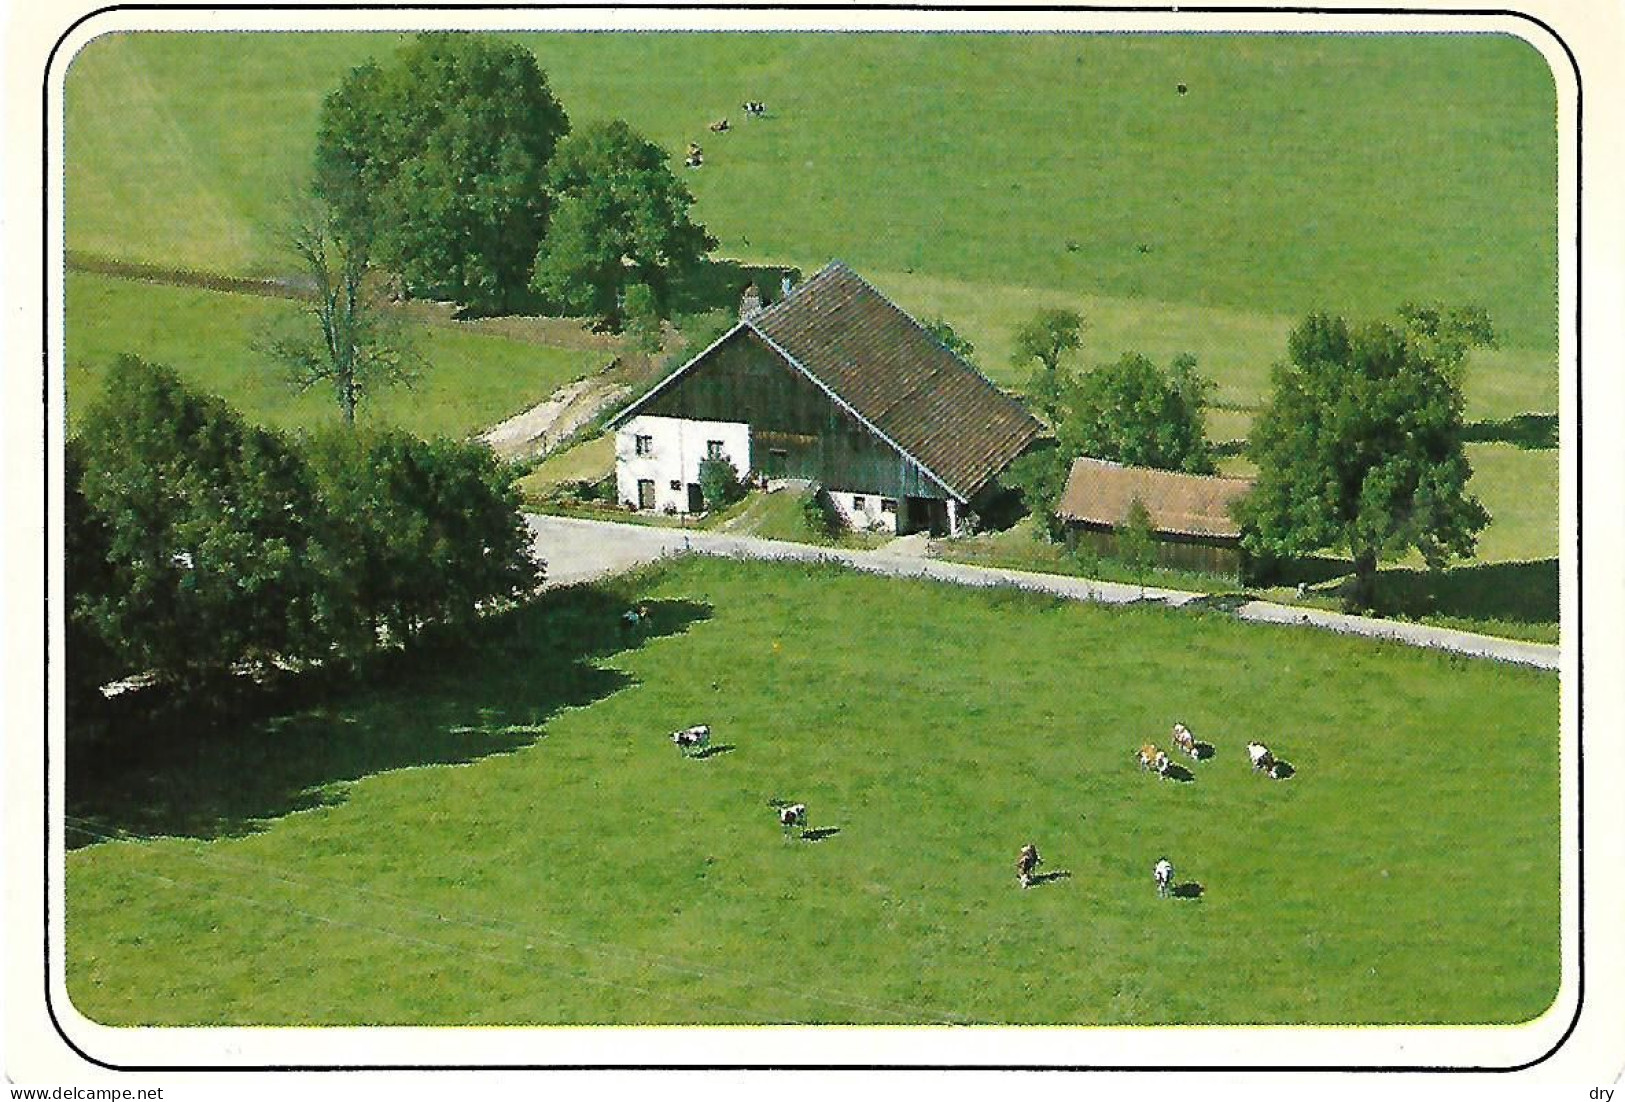 Ferme Comtoise Dans Le Haut-Doubs. Cpm Neuve. - Bauernhöfe